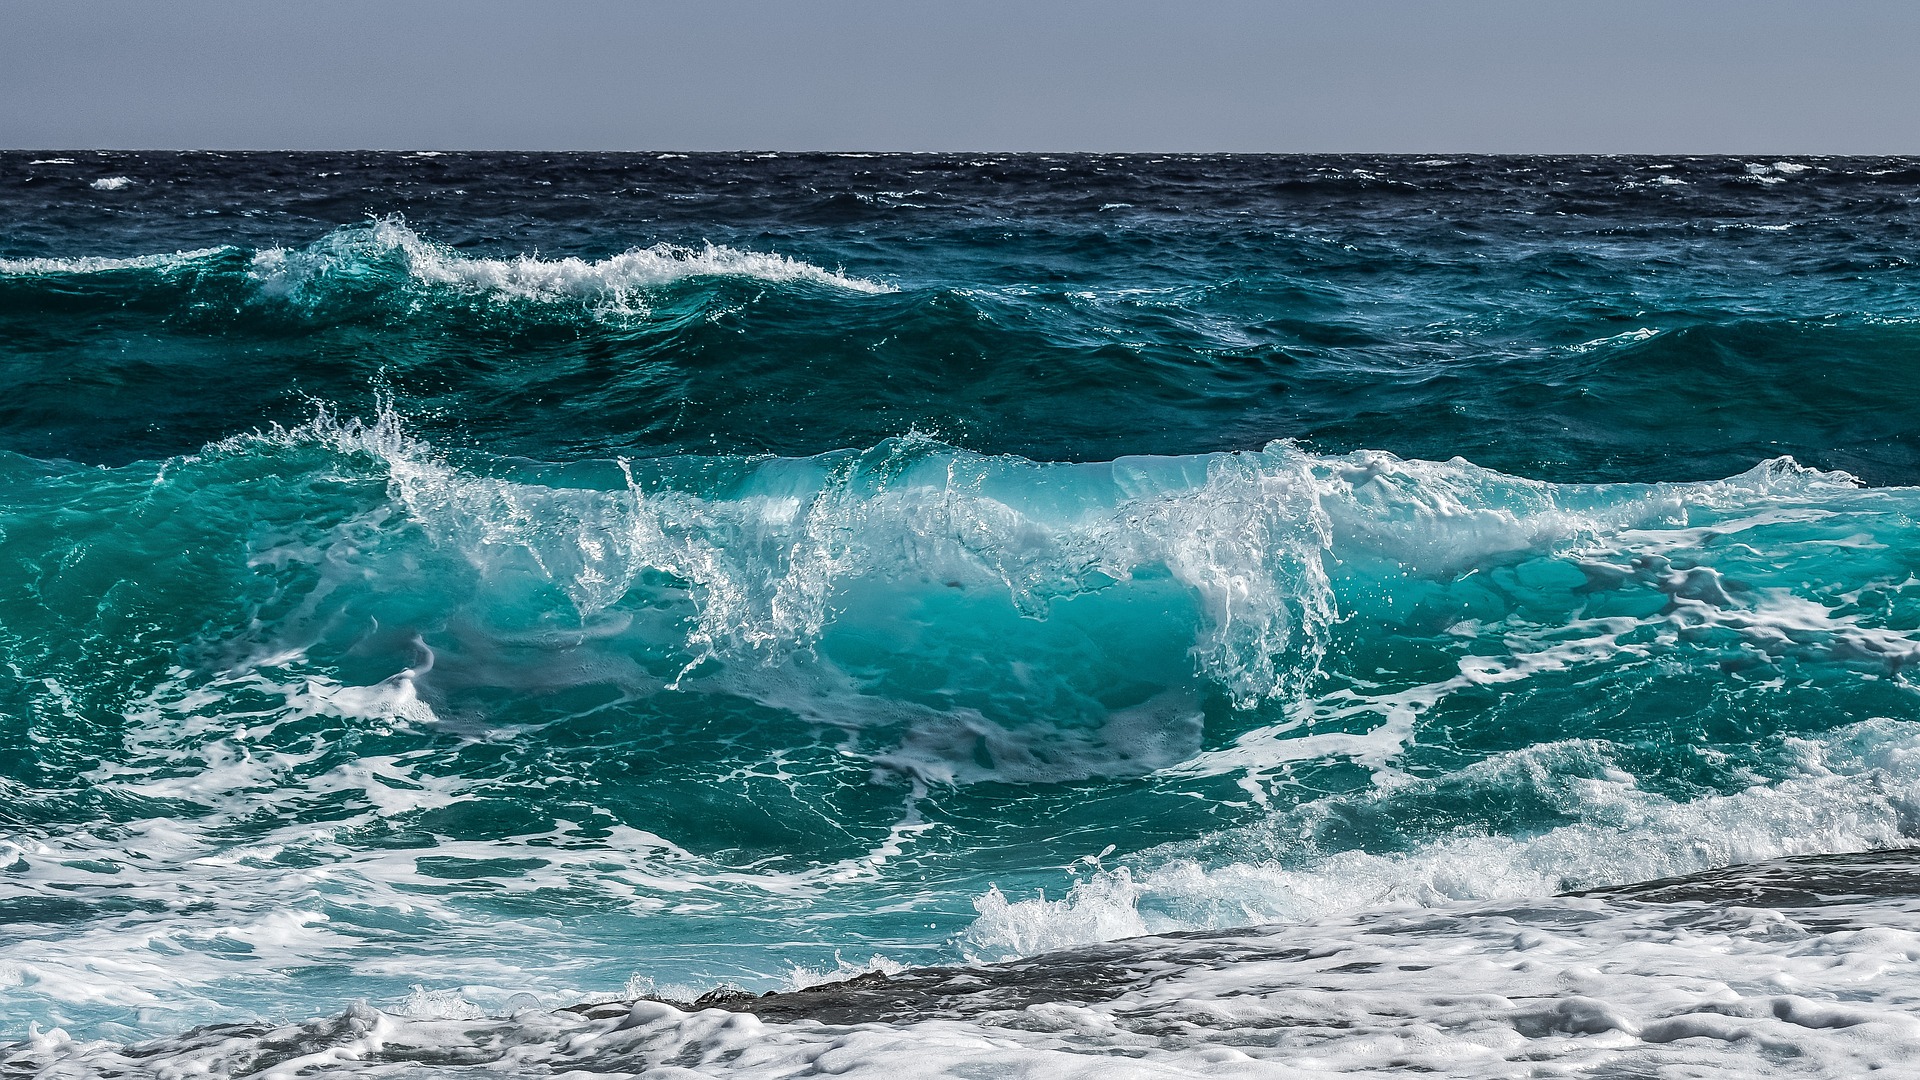 onde del mare, pixabay 2022